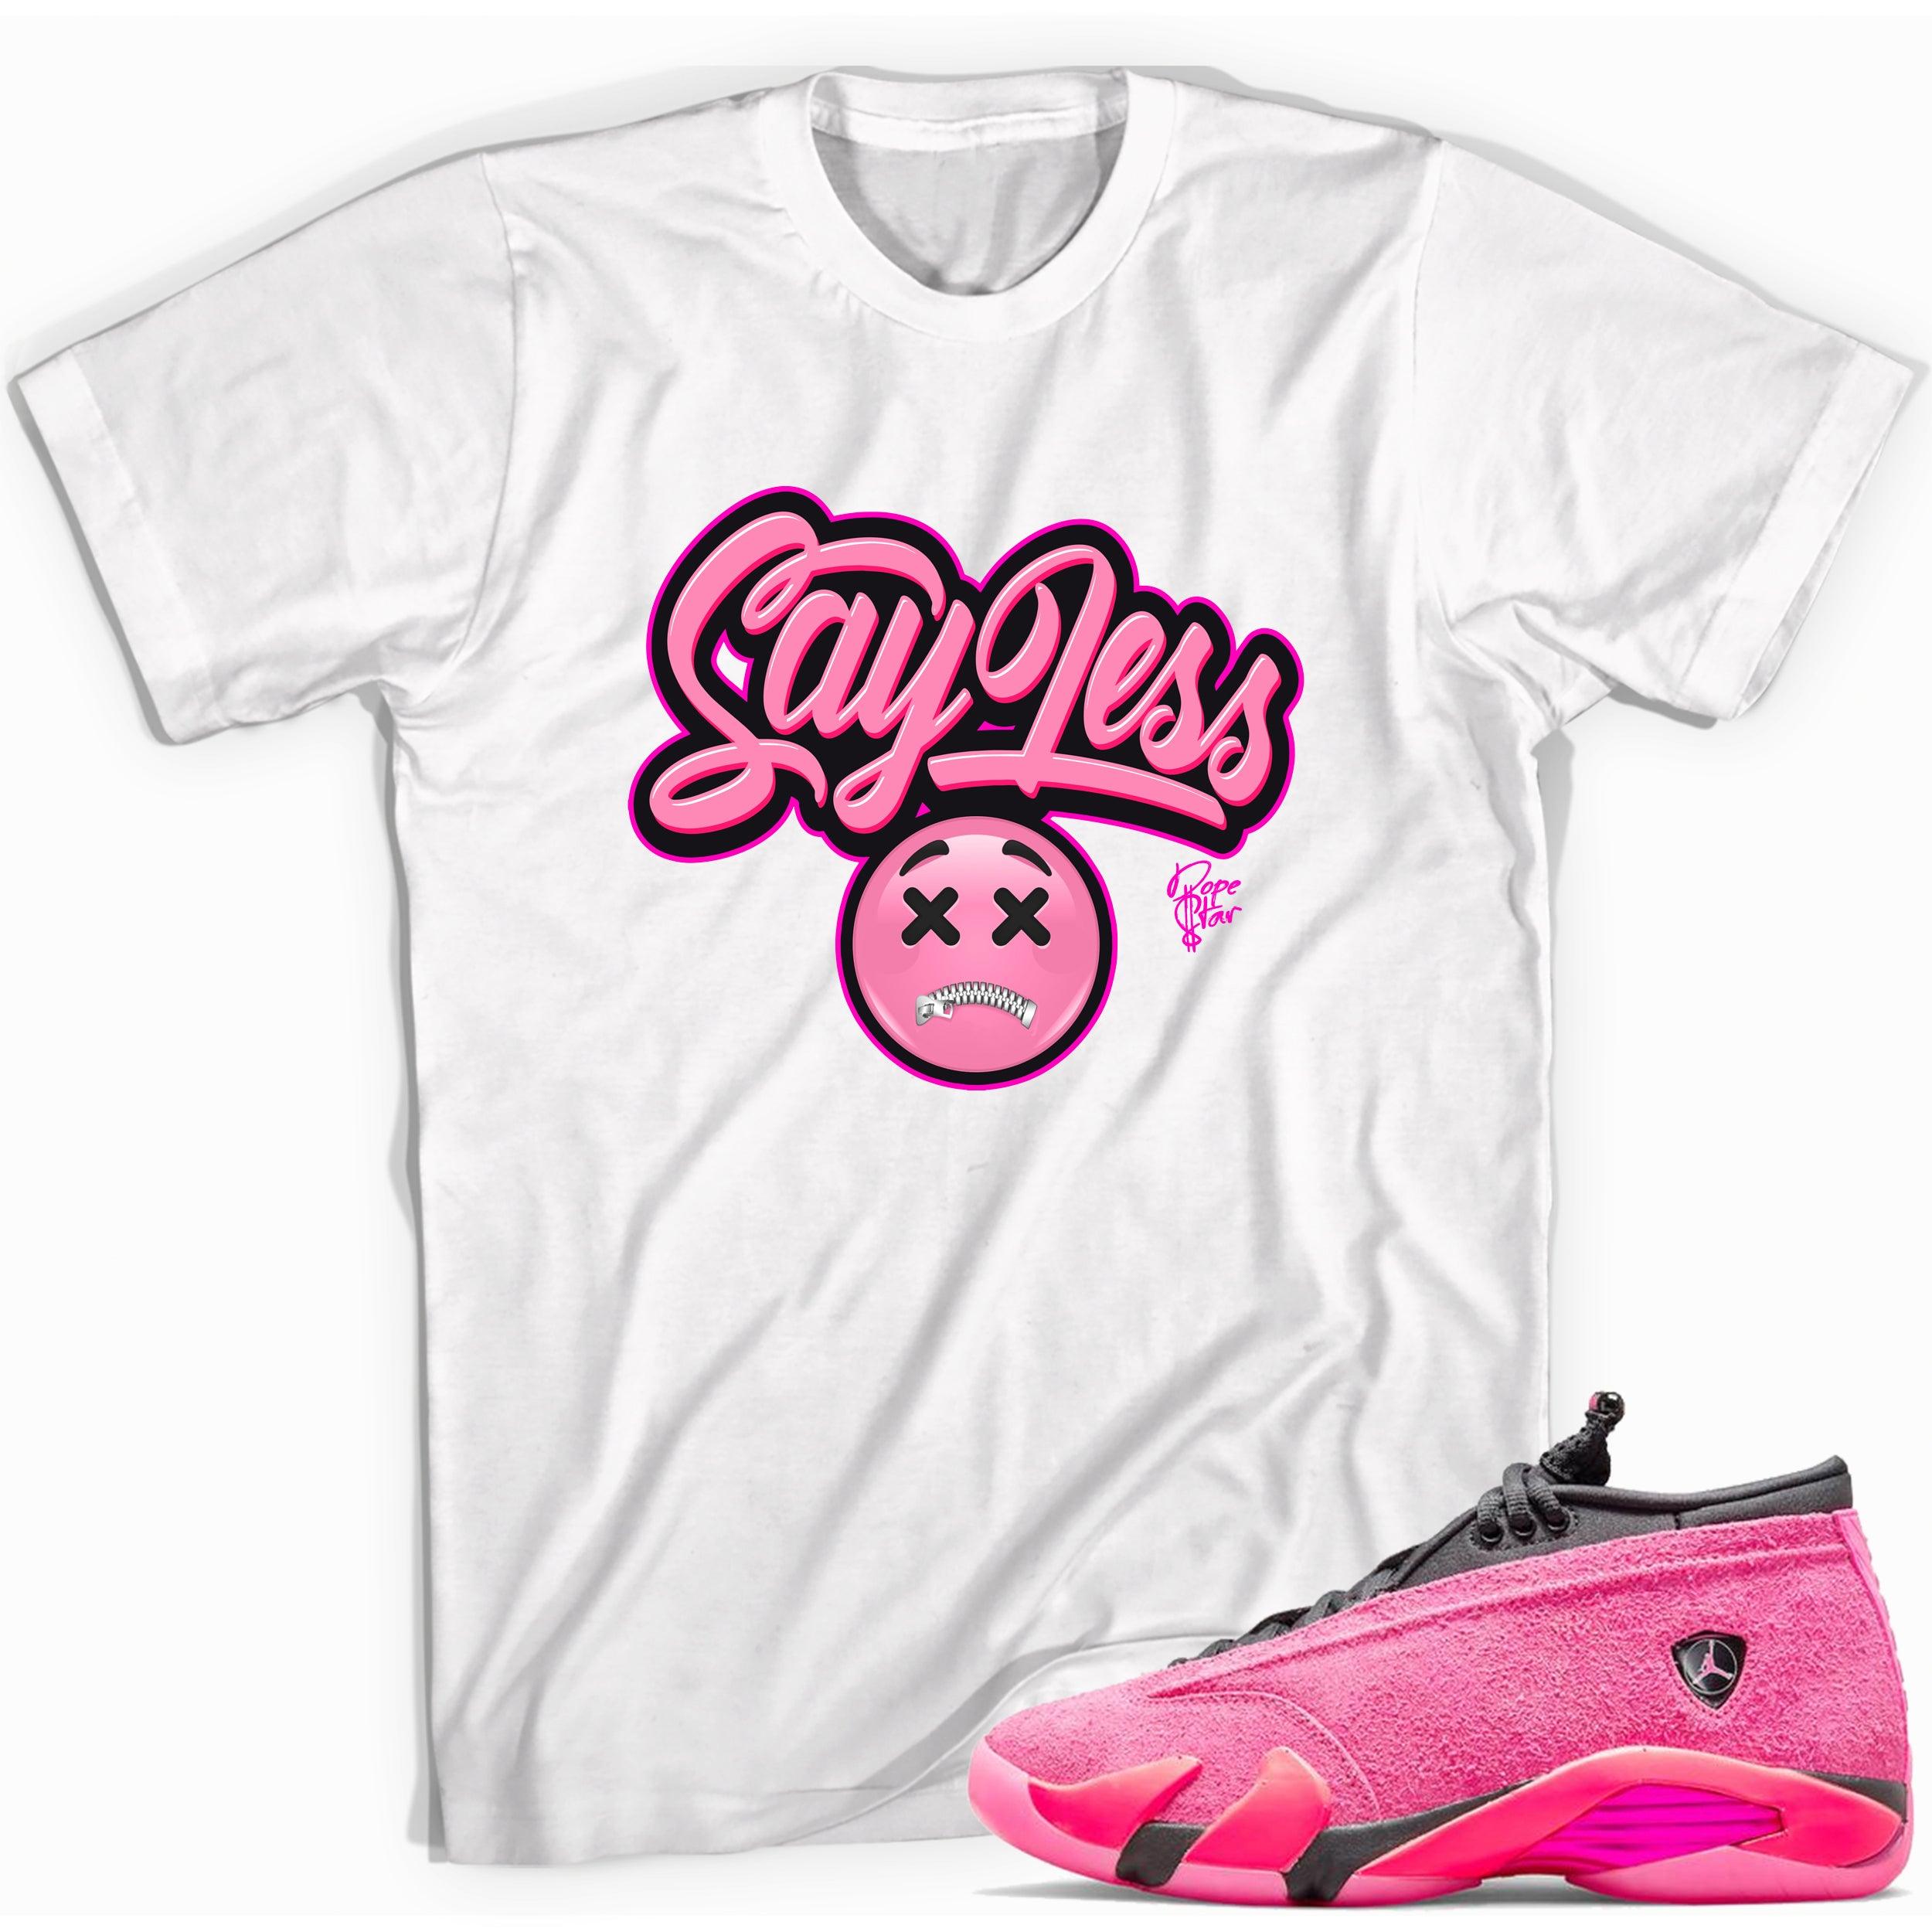 Say Less Shirt Jordan 14 Shocking Pink photo